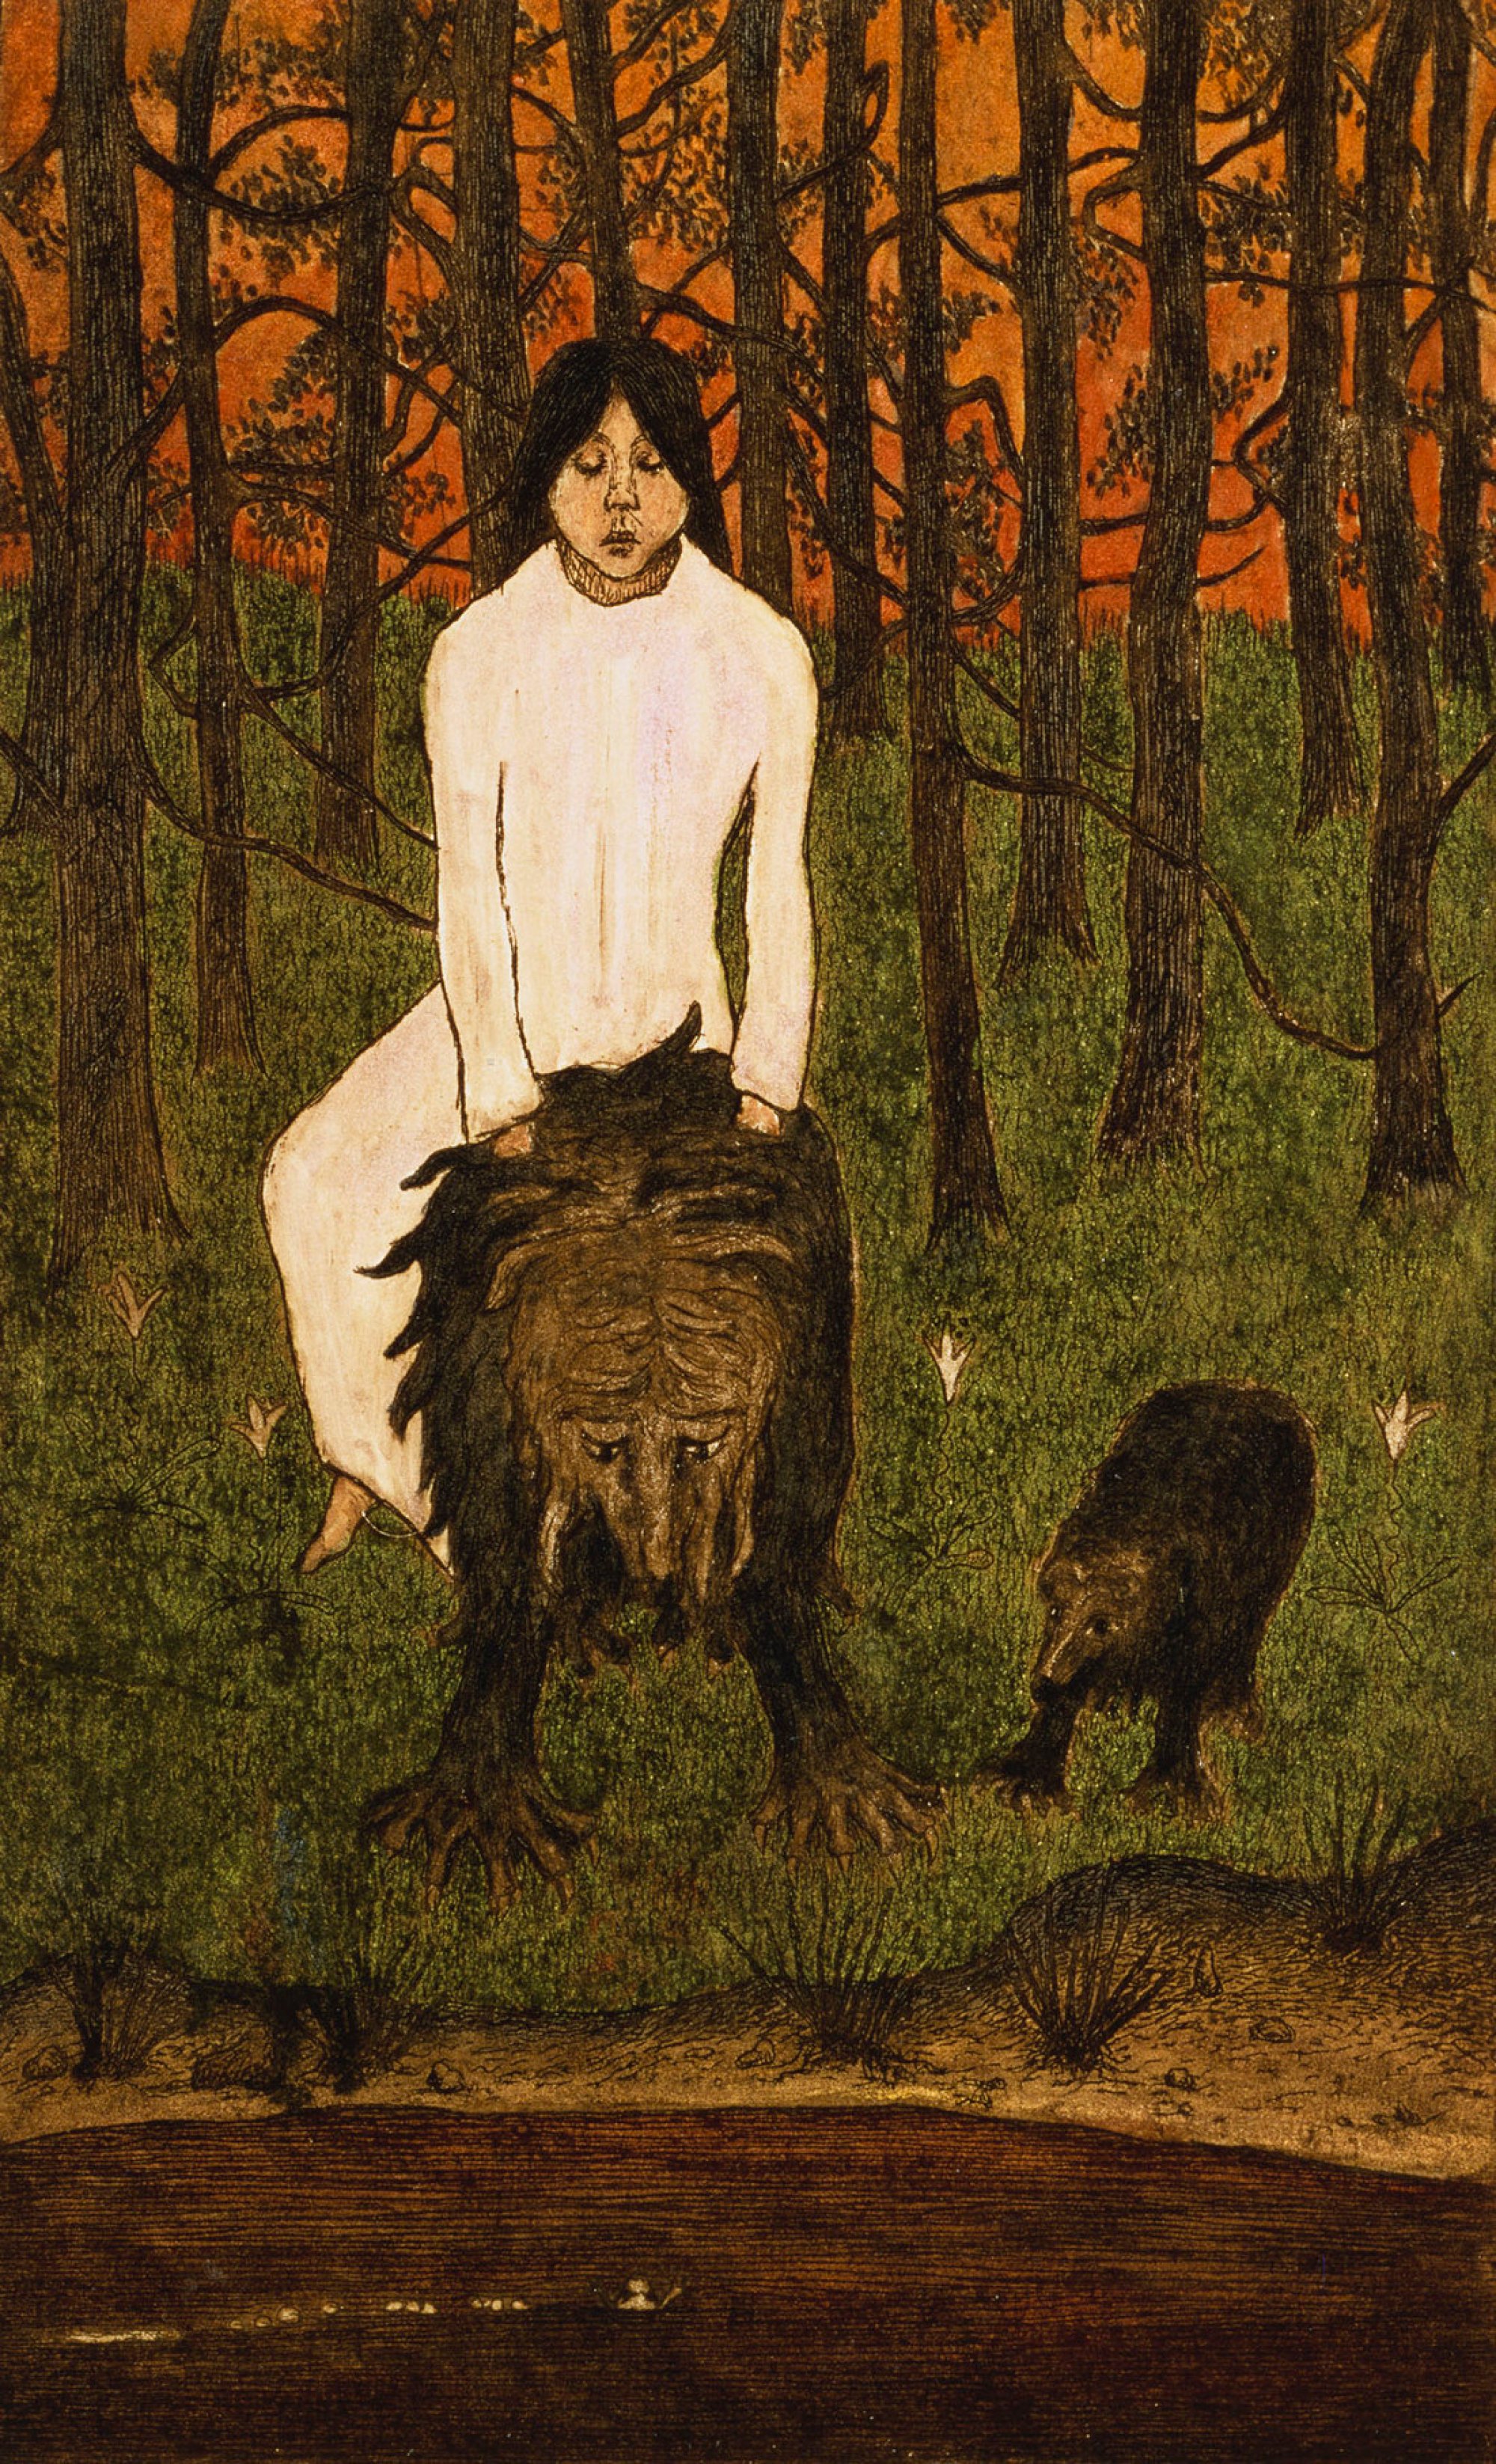 परी कथा by Hugo Simberg - 1898 - 21 x 13 से०मी० 